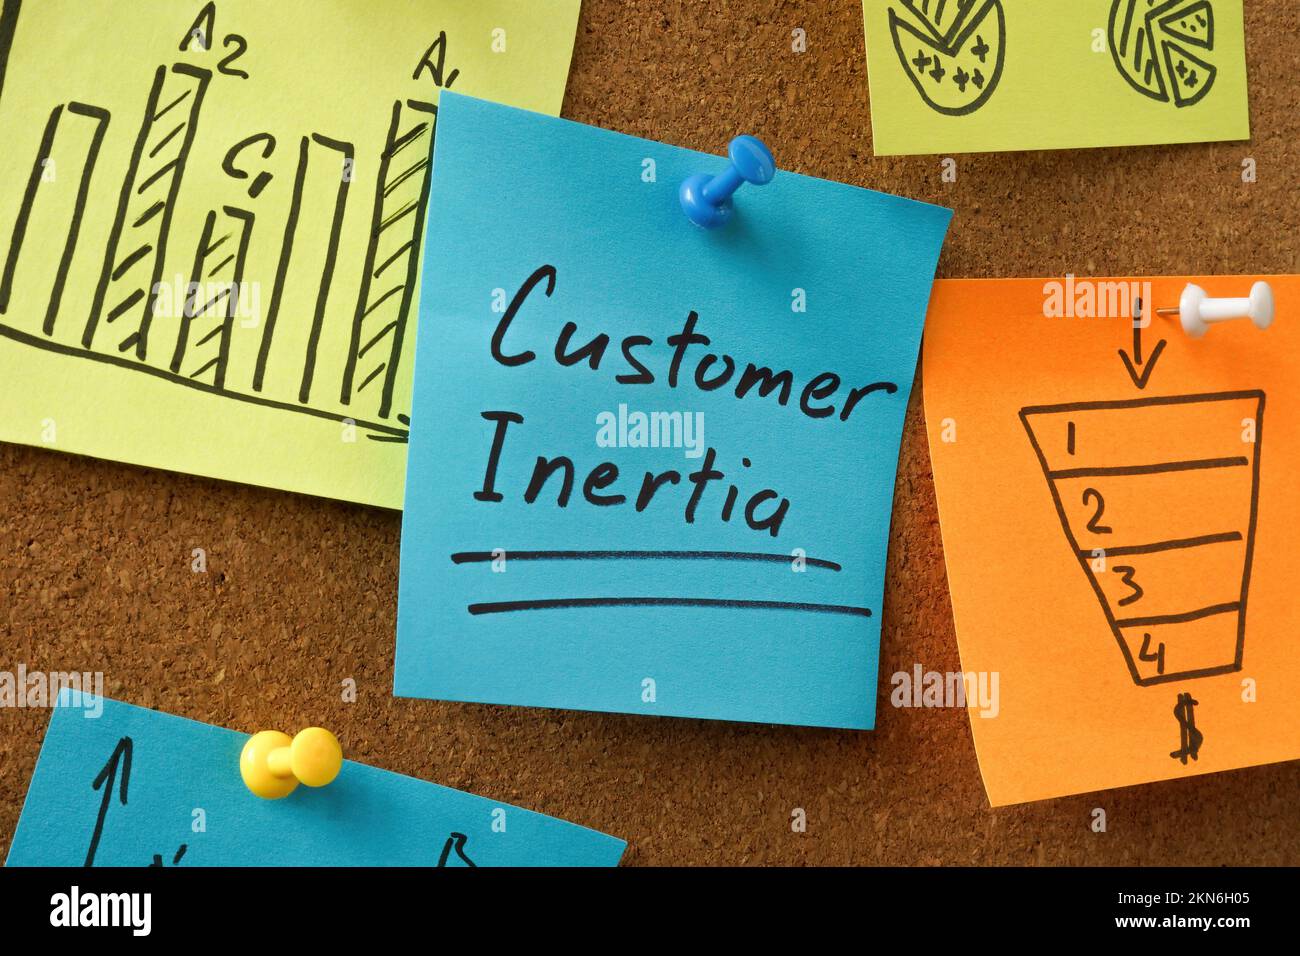 Tafel mit Aufklebern und eine mit Aufschrift „Customer Inertia“. Stockfoto